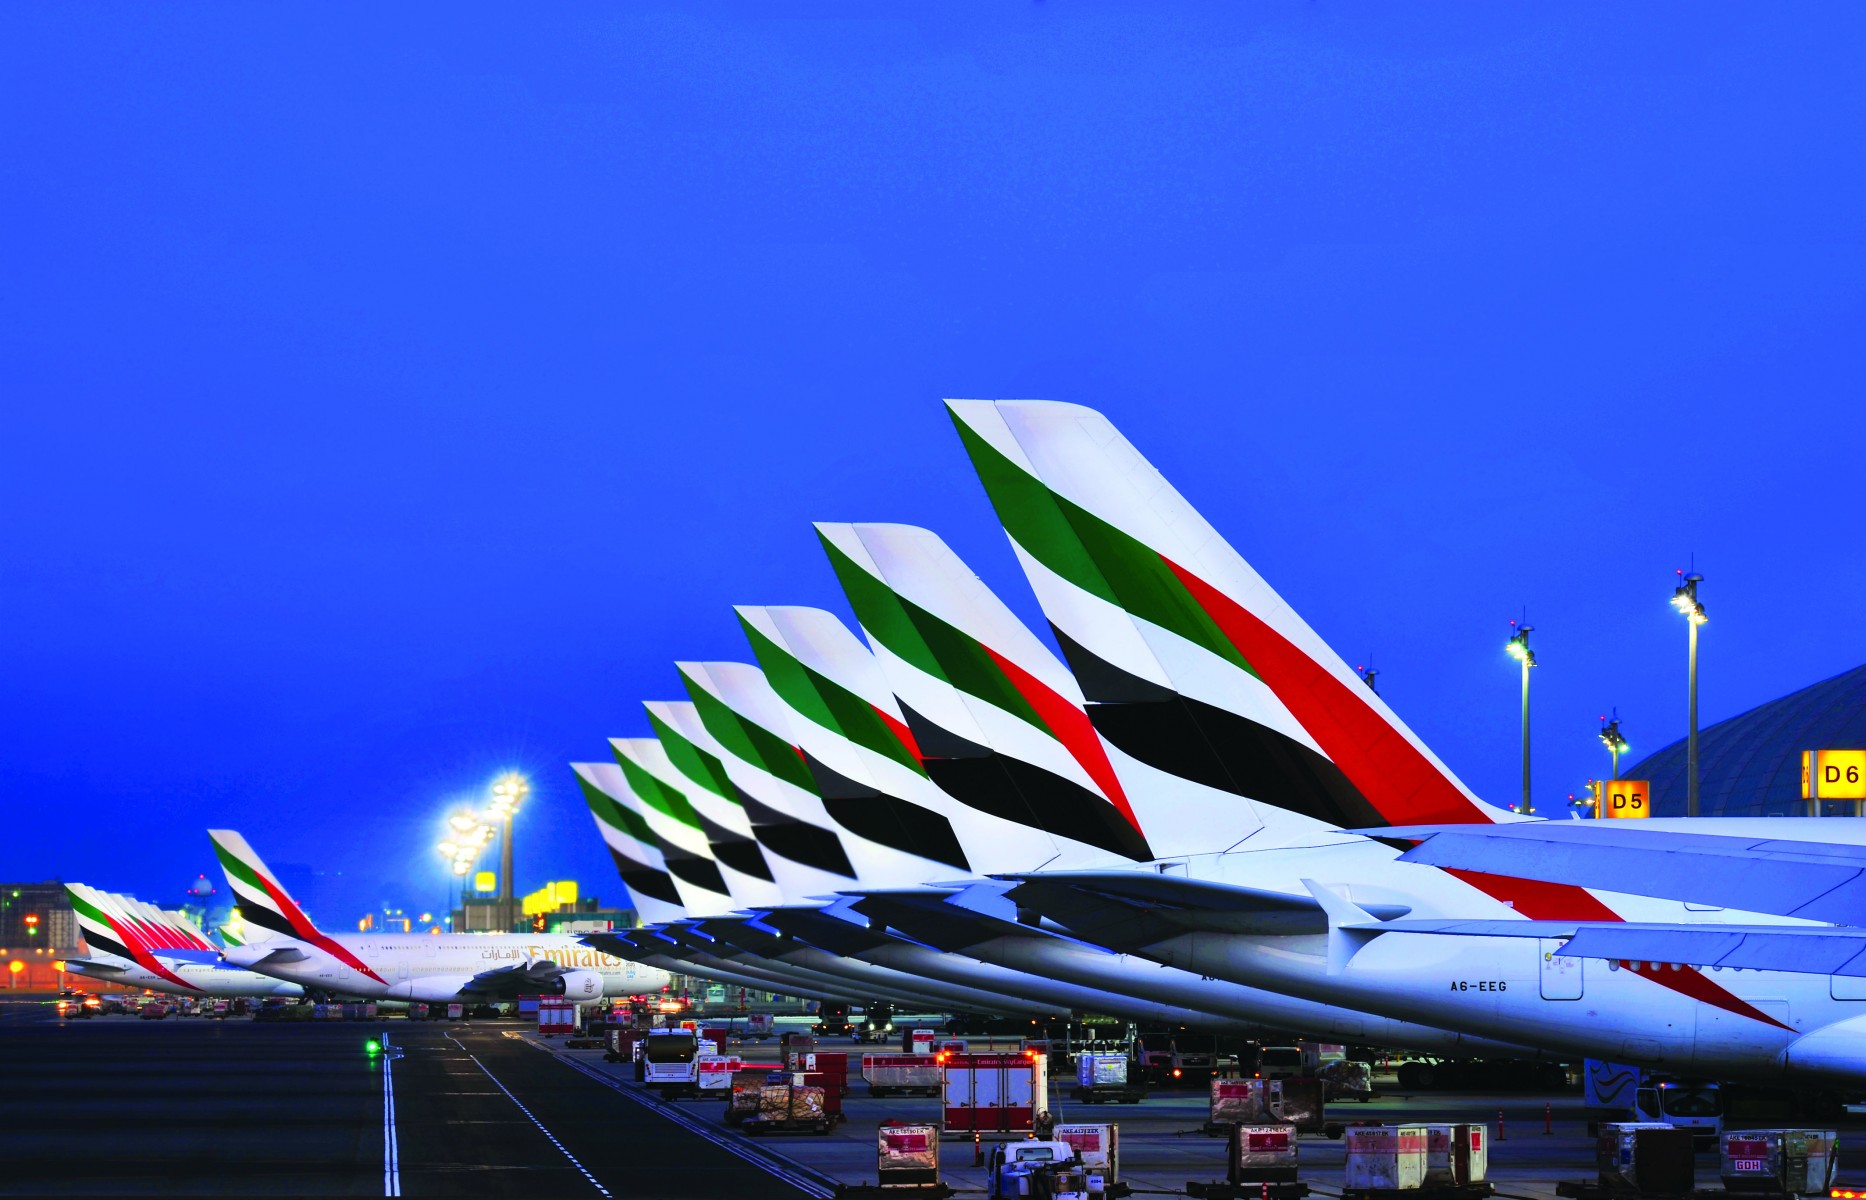 طيران الإمارات تغيير مواعيد السفر وإعادة إصدار التذاكر دون رسوم اقتصاد محلي الإمارات اليوم